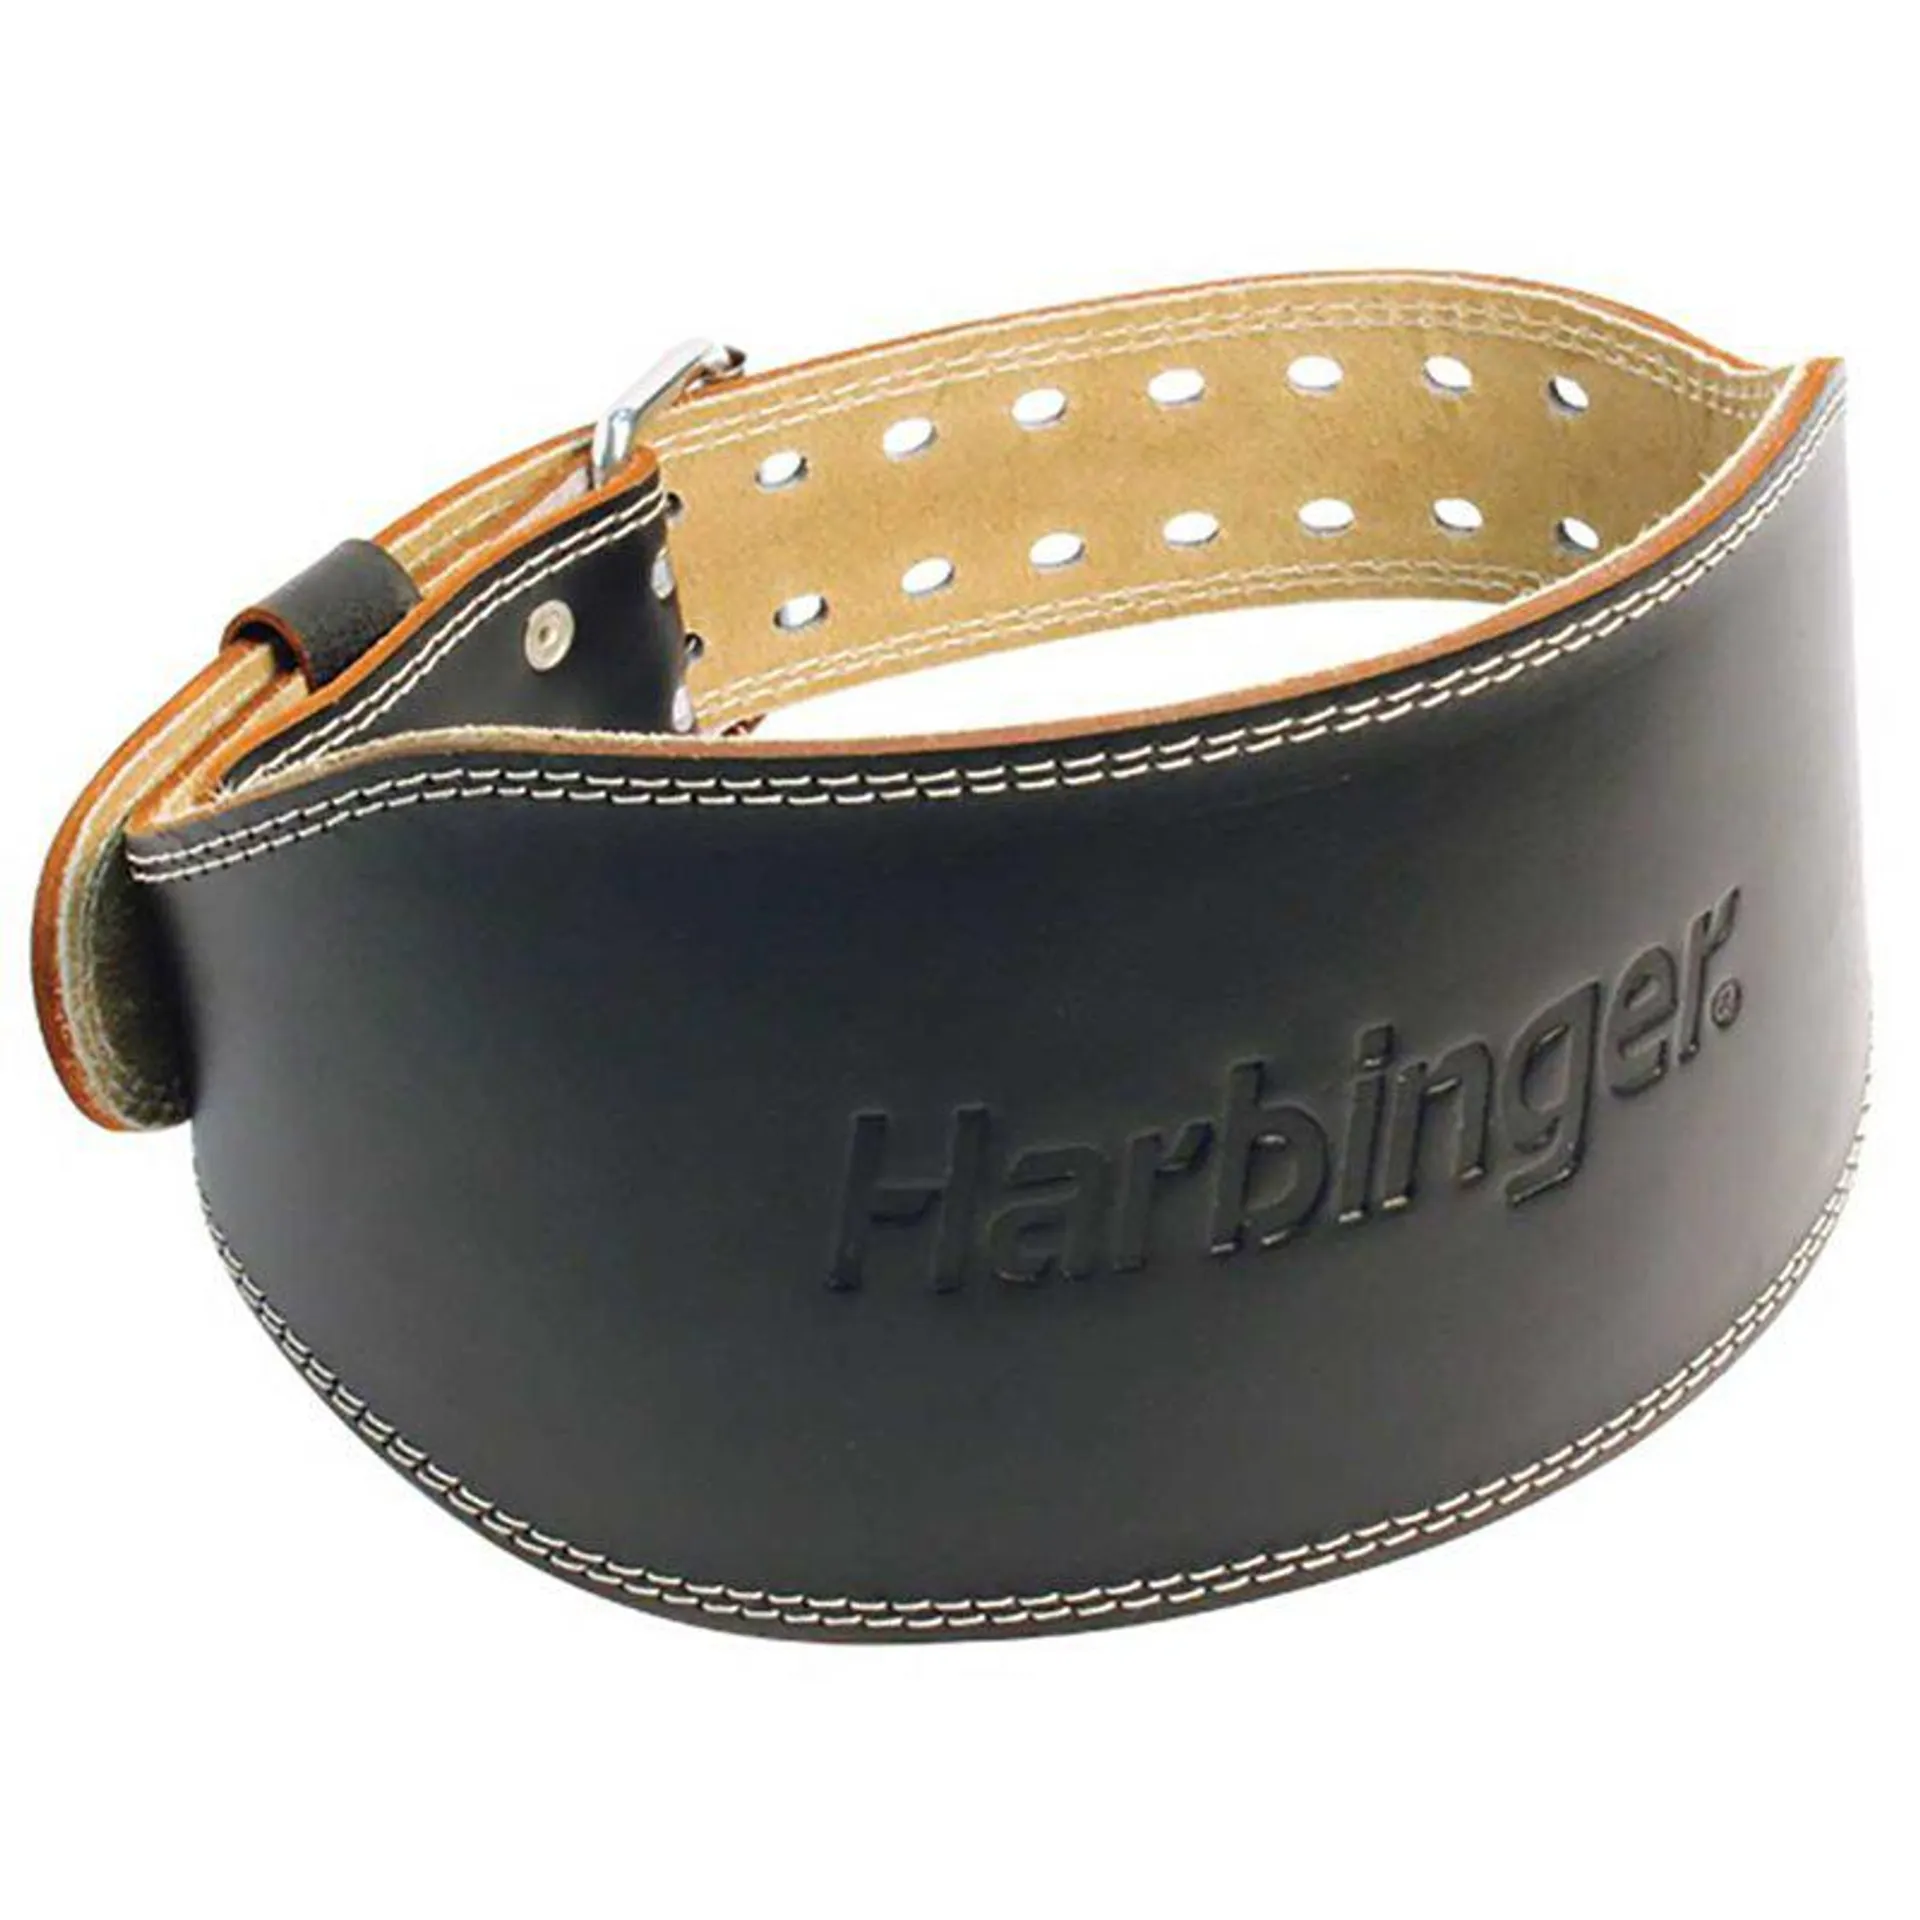 Harbinger 6 inch Padded Leather Belt - Adult